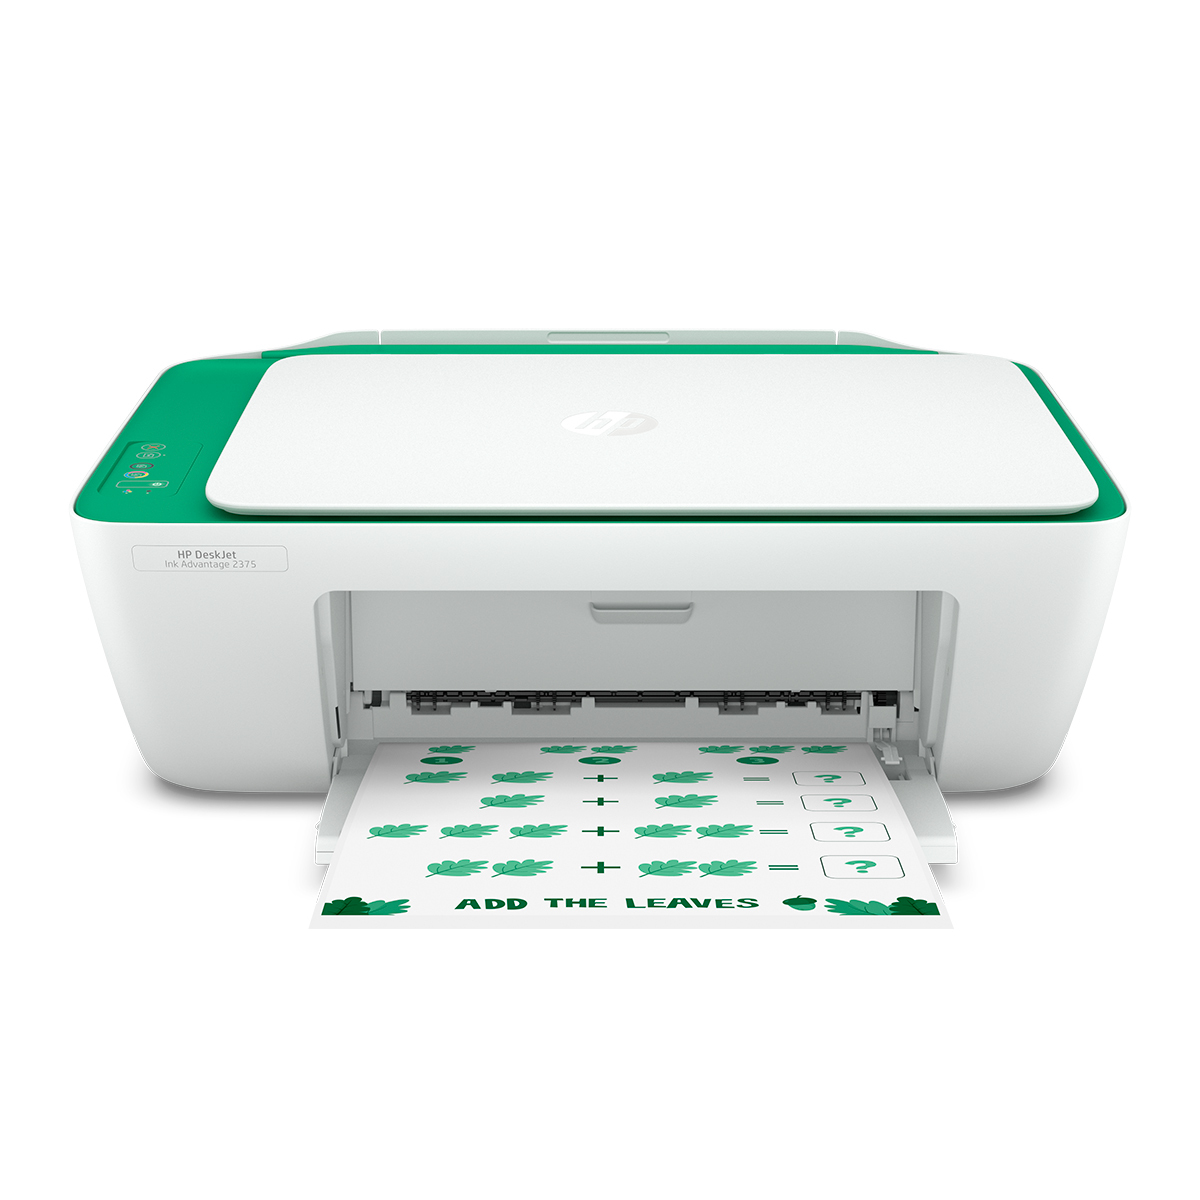 Impresora Multifuncional Hp Deskjet Ink Advantage 2375 / Inyección de tinta / Color / USB